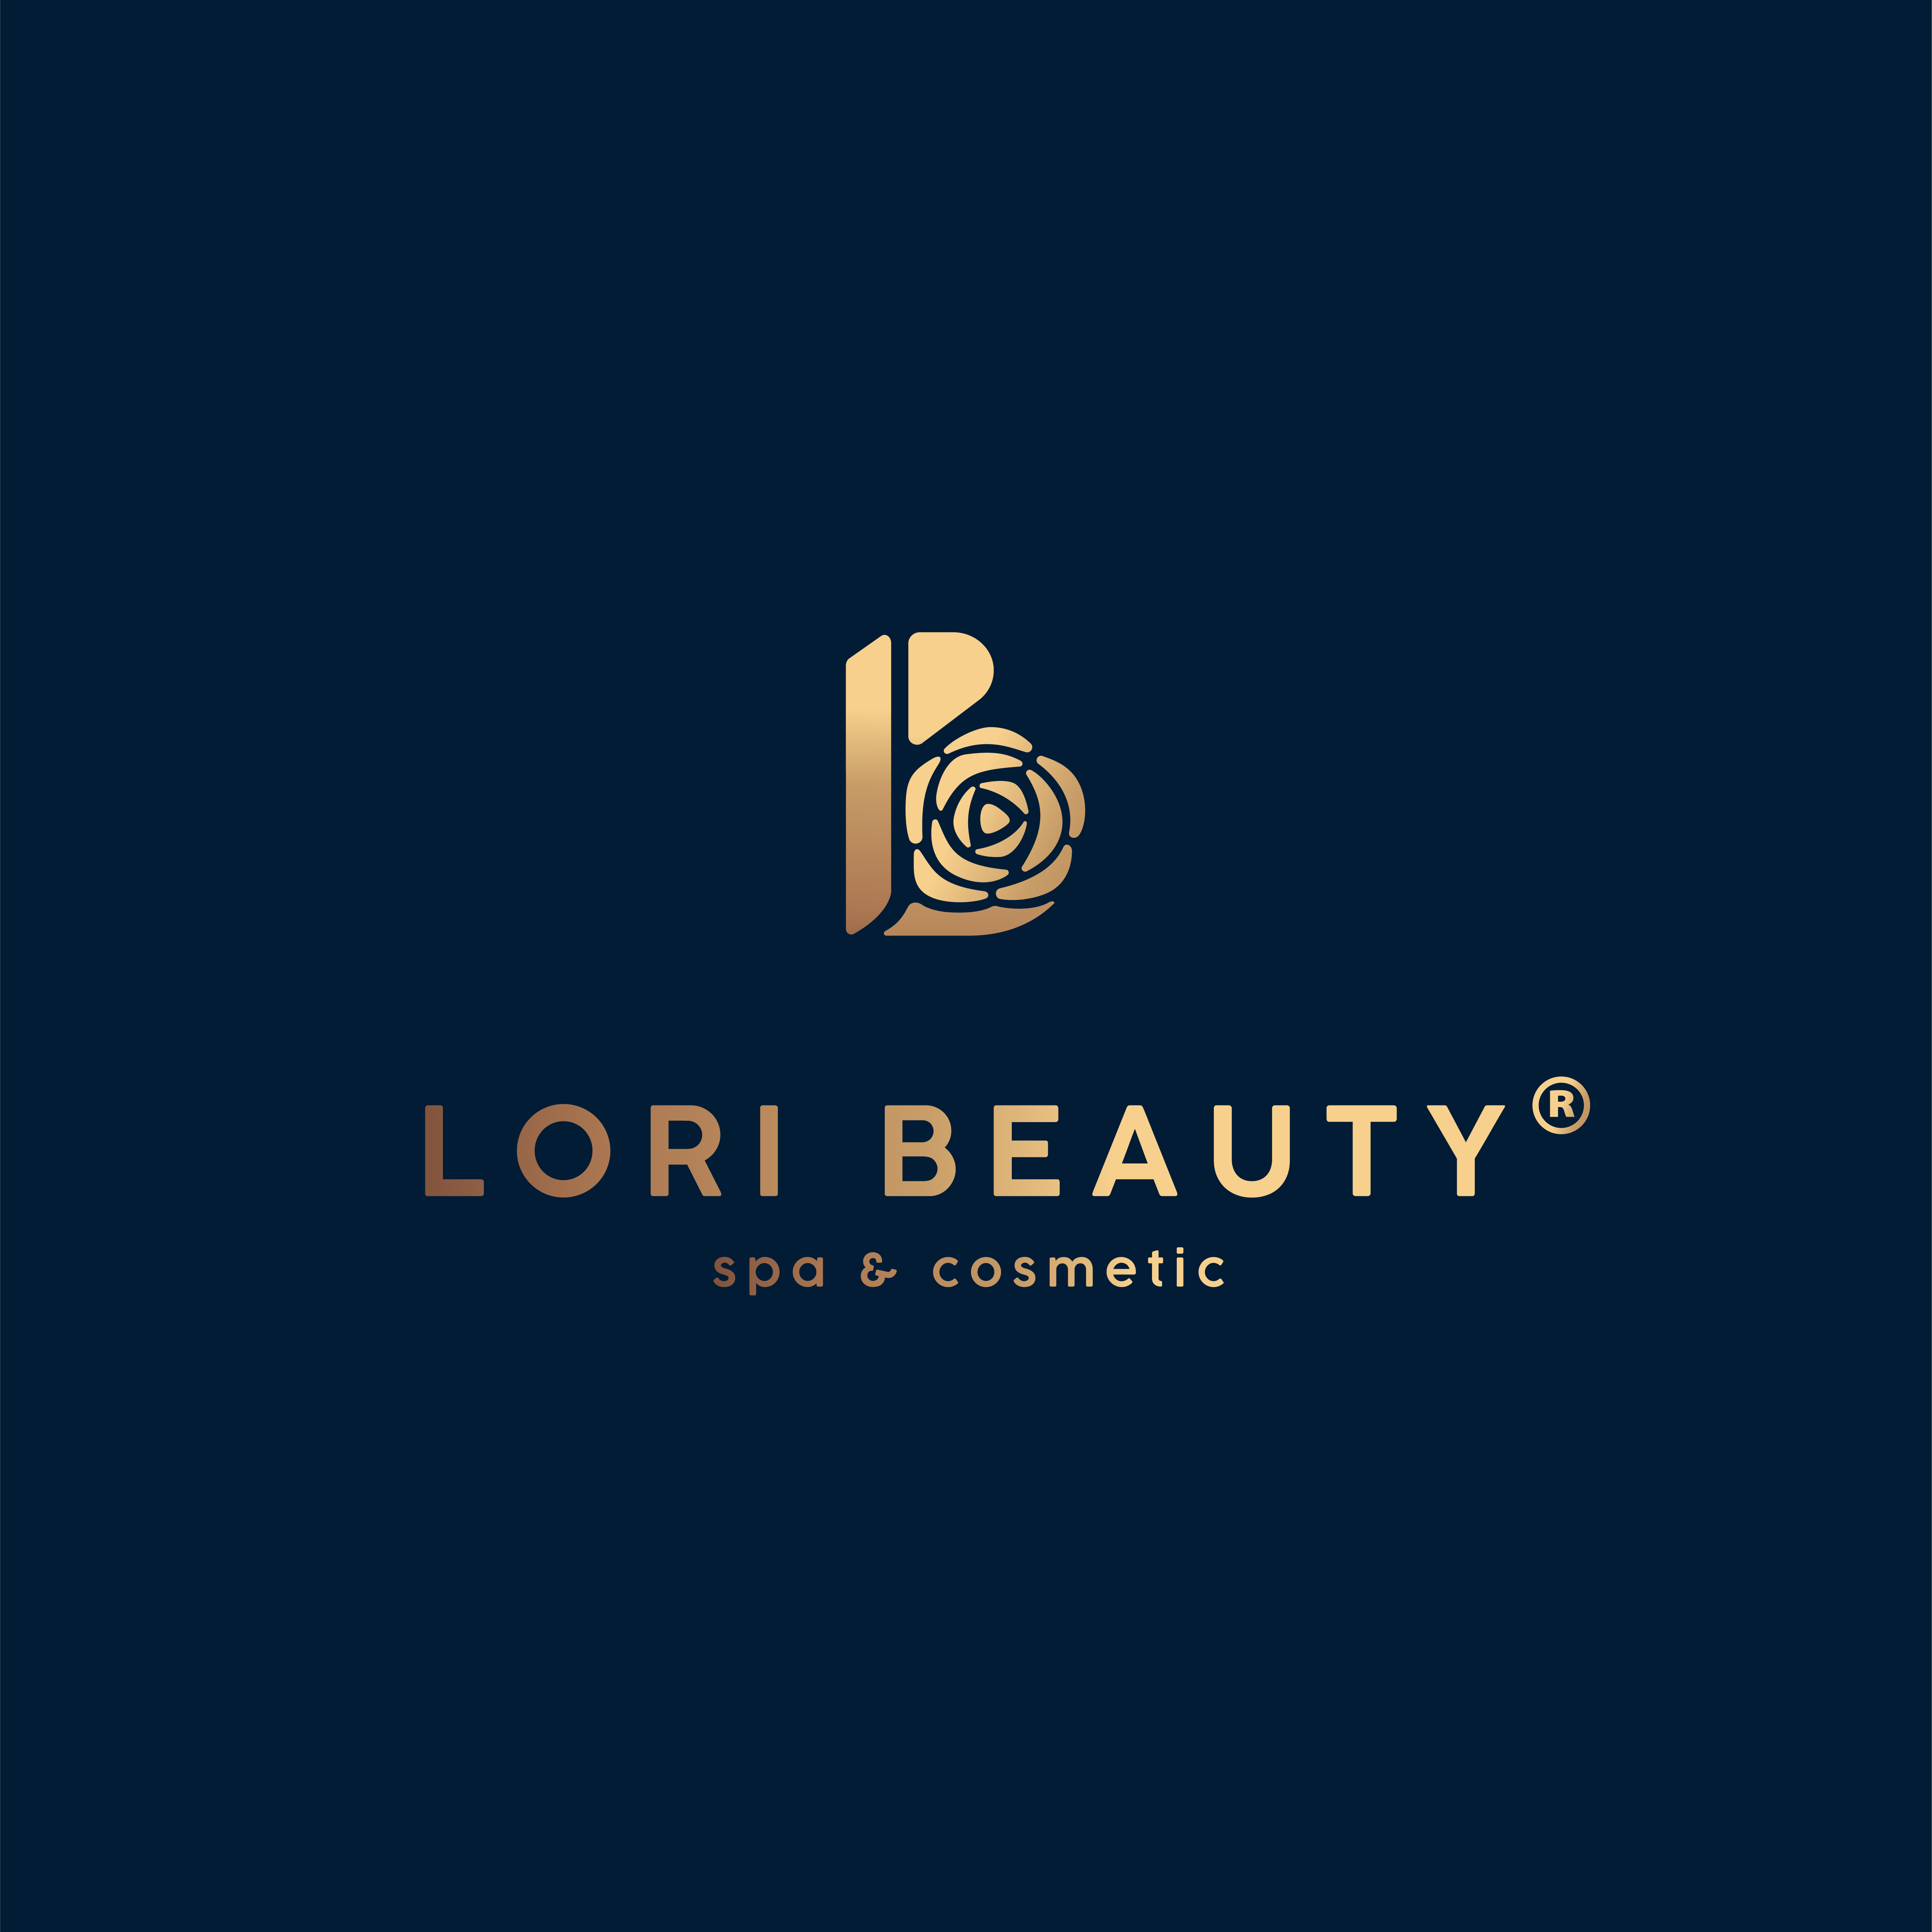 Lori Beauty